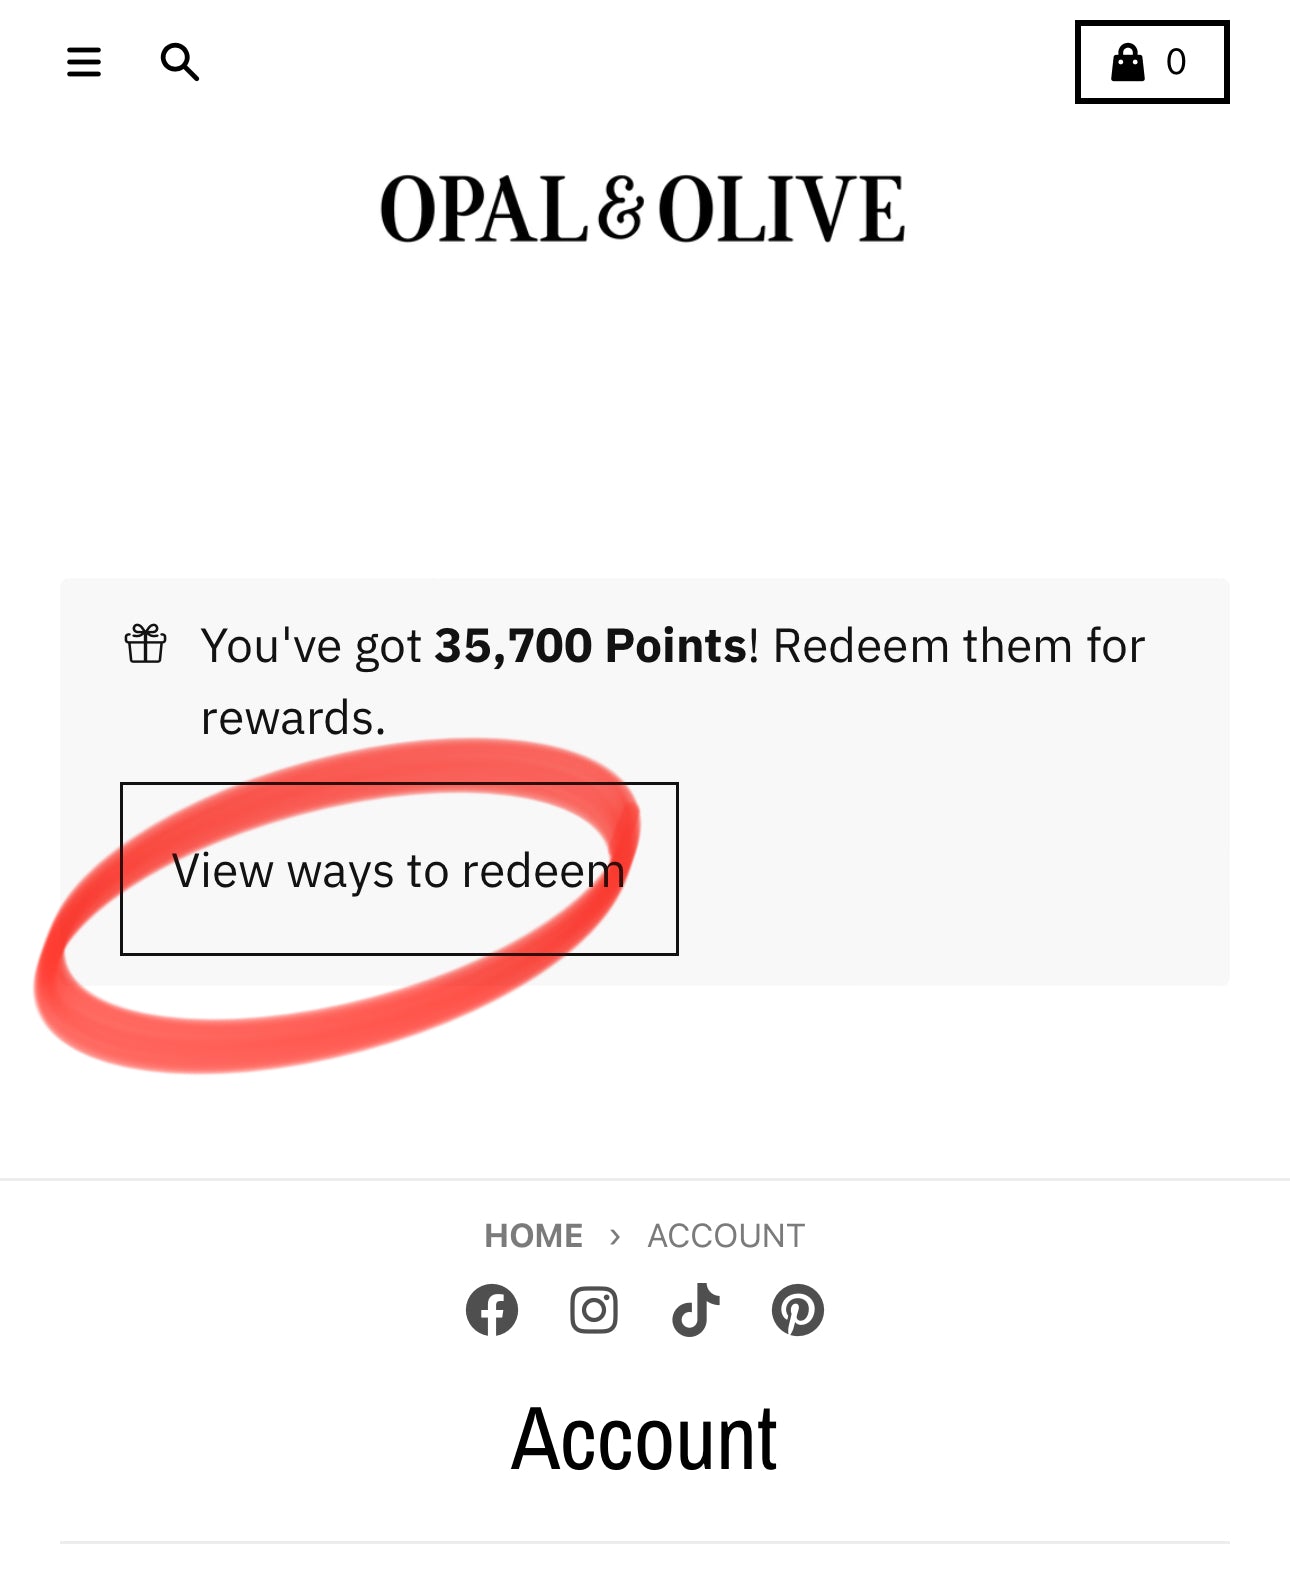 Rewards Program  Opal and Olive   